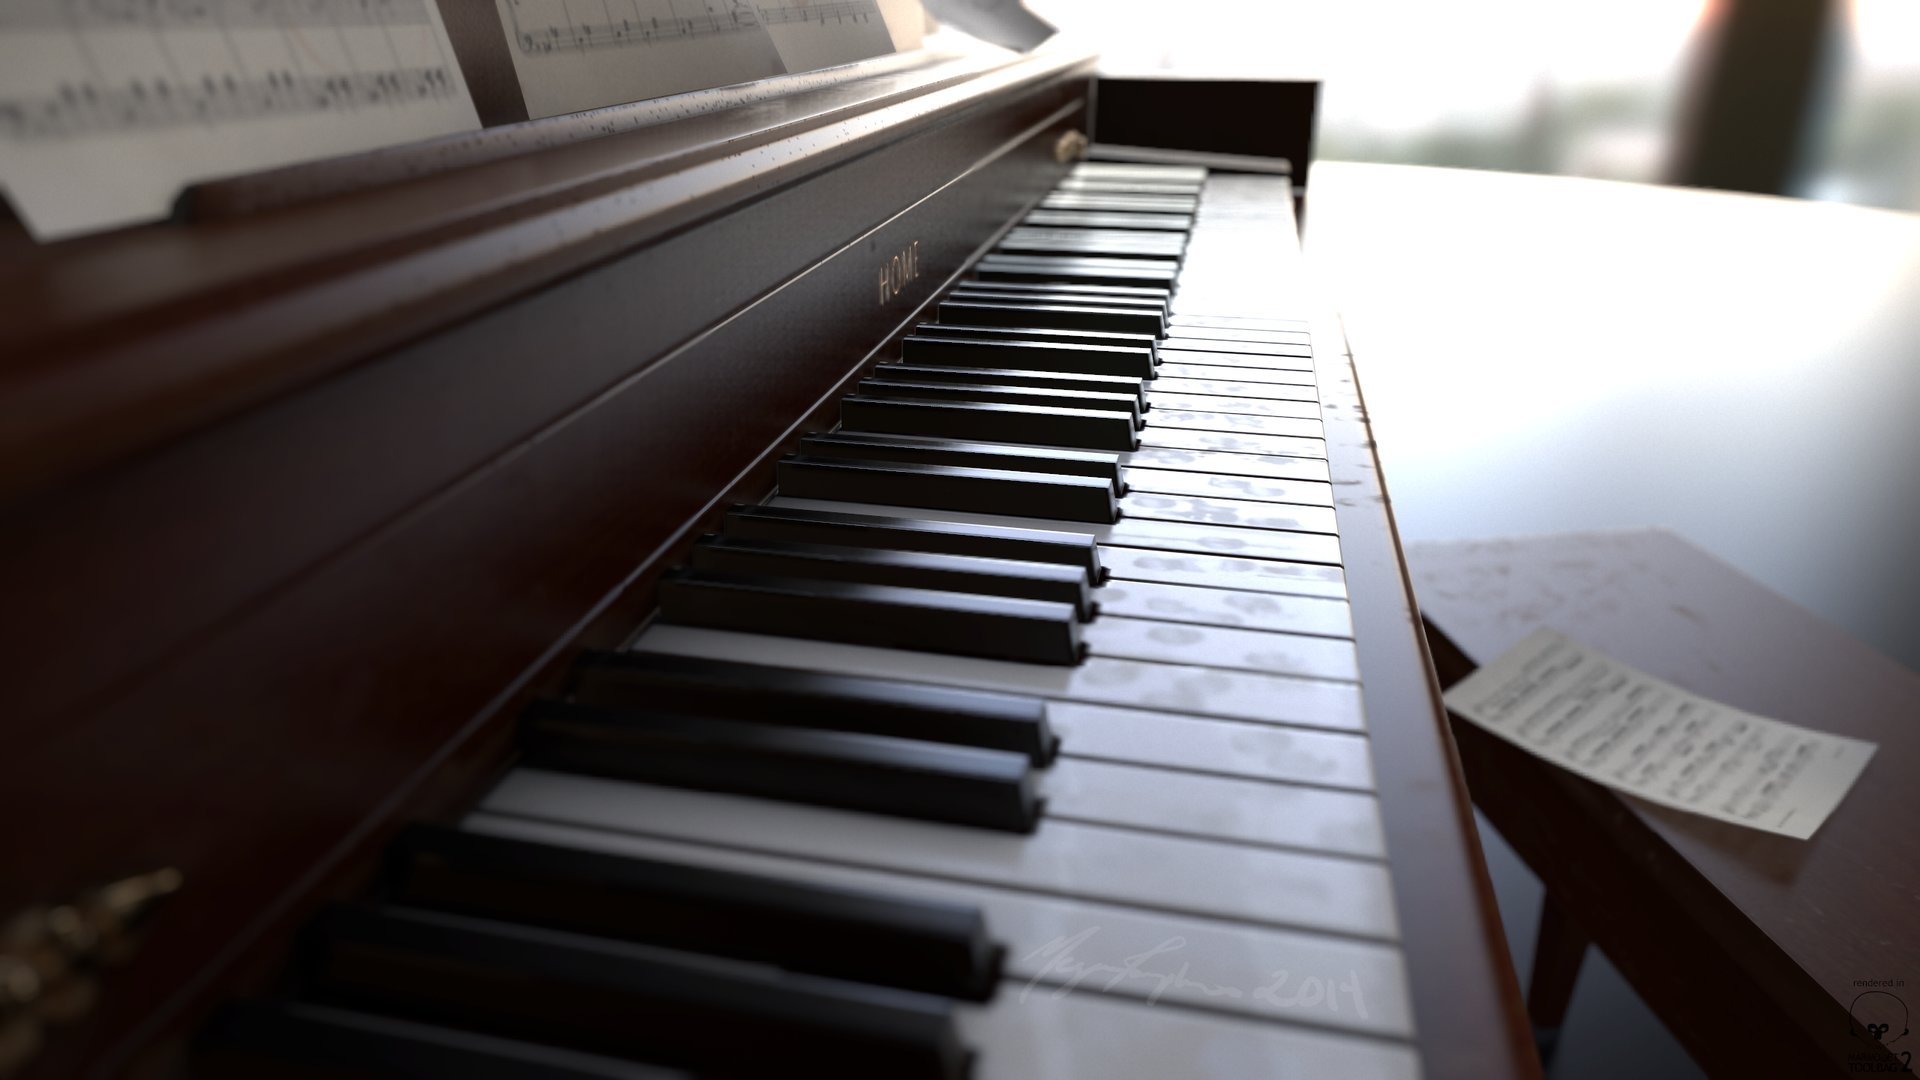 Piano closeup photo